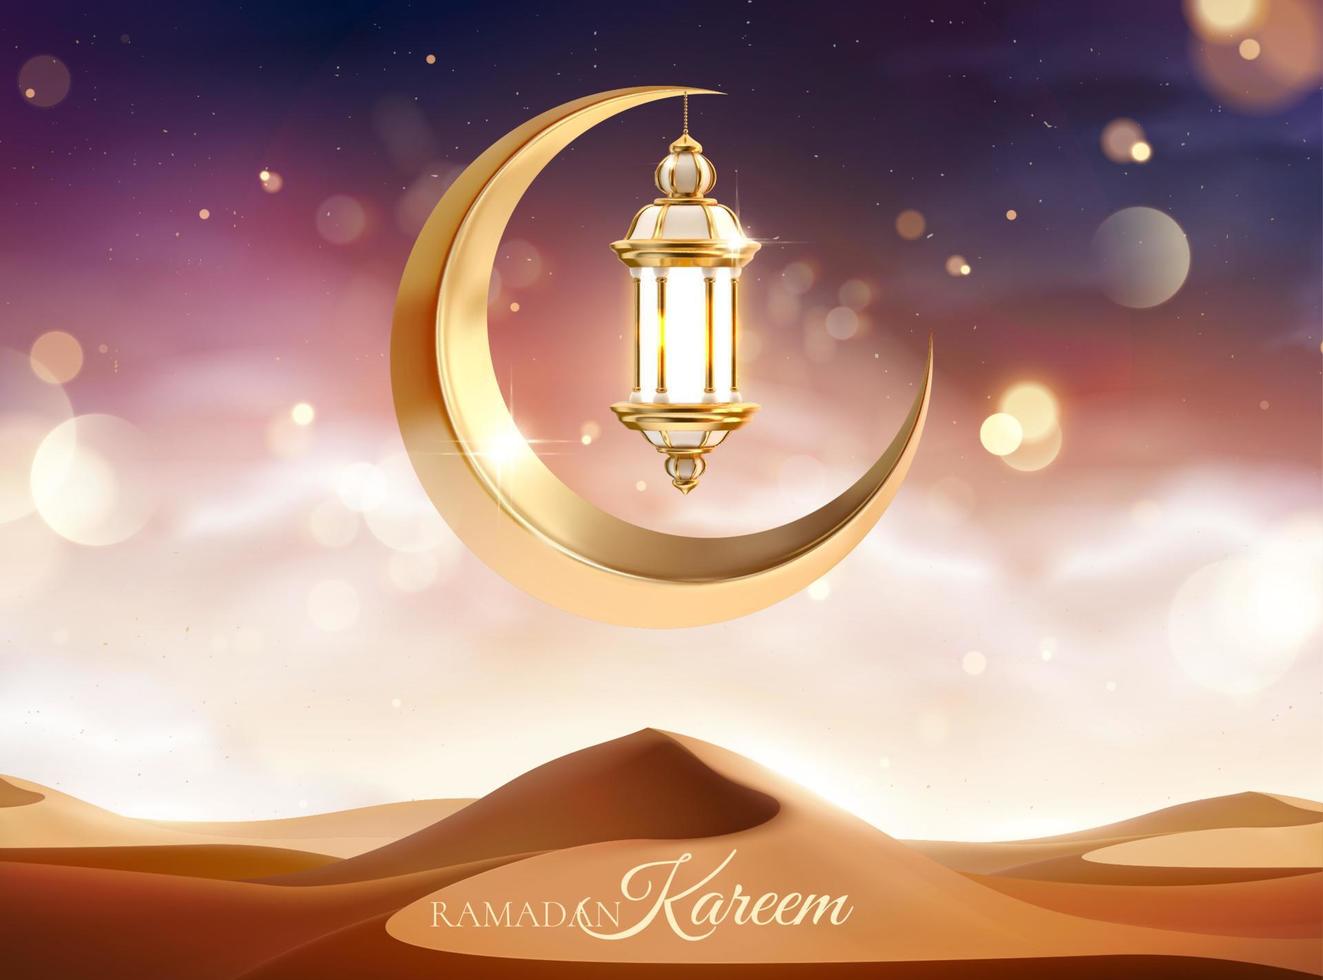 schön Wüste Sonnenuntergang Landschaft mit Metall Mond und Laterne Dekoration. 3d islamisch Urlaub Feier Hintergrund geeignet zum Ramadan, eid al-fitr oder Hari Raya. vektor